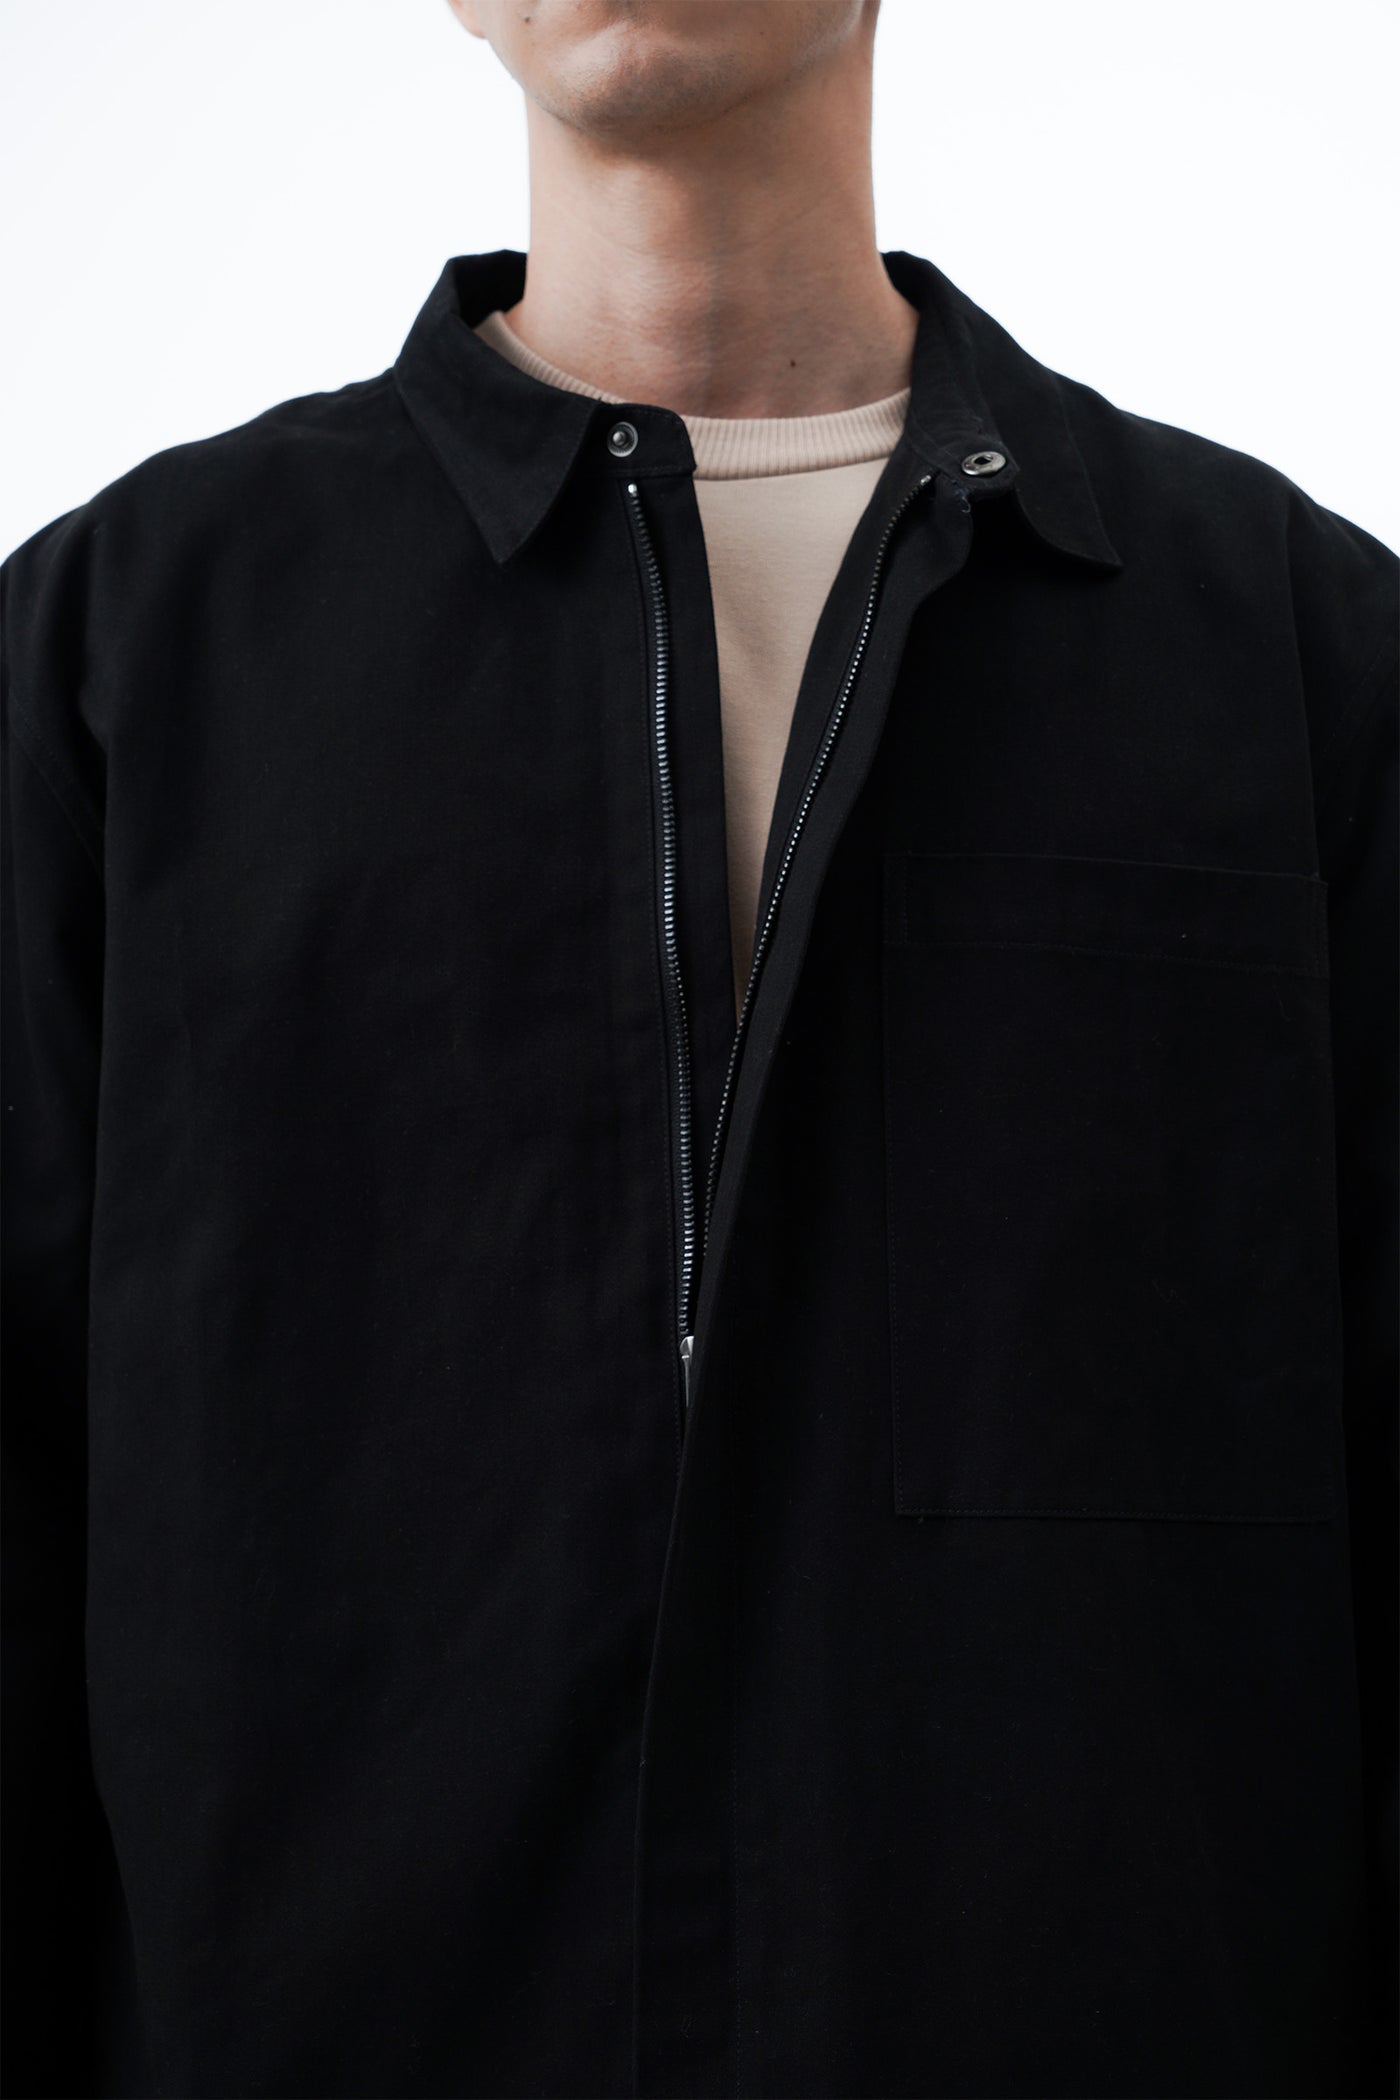 Men's Hidden Placket Overshirt with Zipper - The New Standard